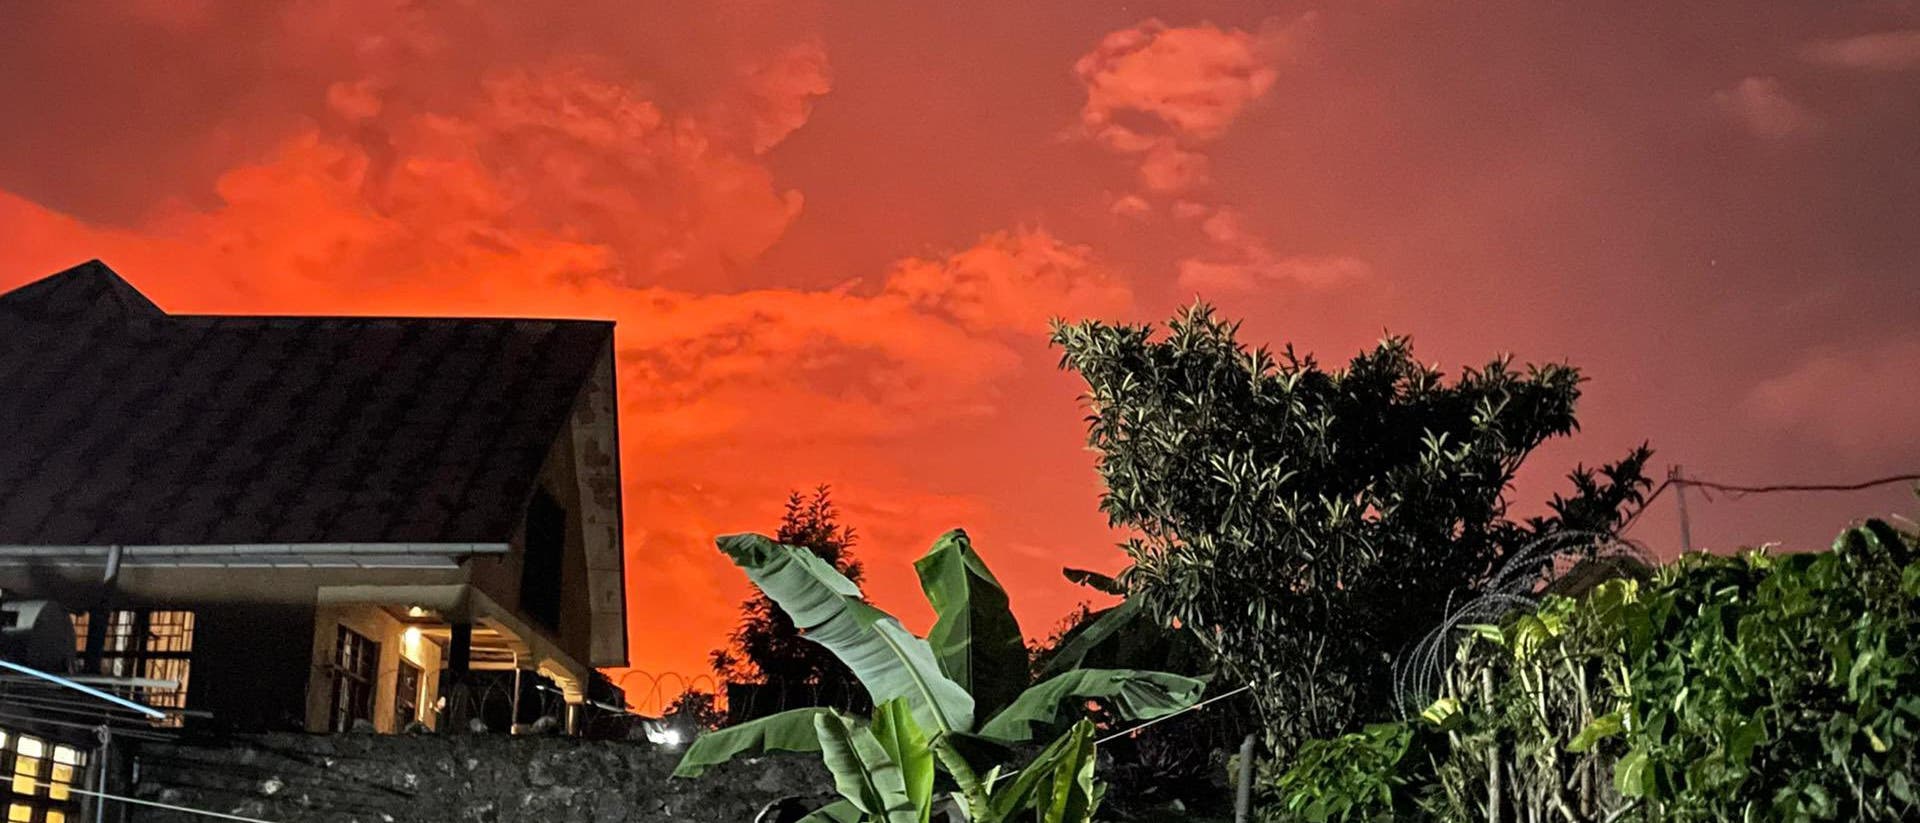 Nach Ausbruch des Vulkans Nyiragongo am 22. Mai 2021 leuchtete der Nachthimmel der Millionenstadt Goma in der Demokratischen Republik Kongo orange-rot.